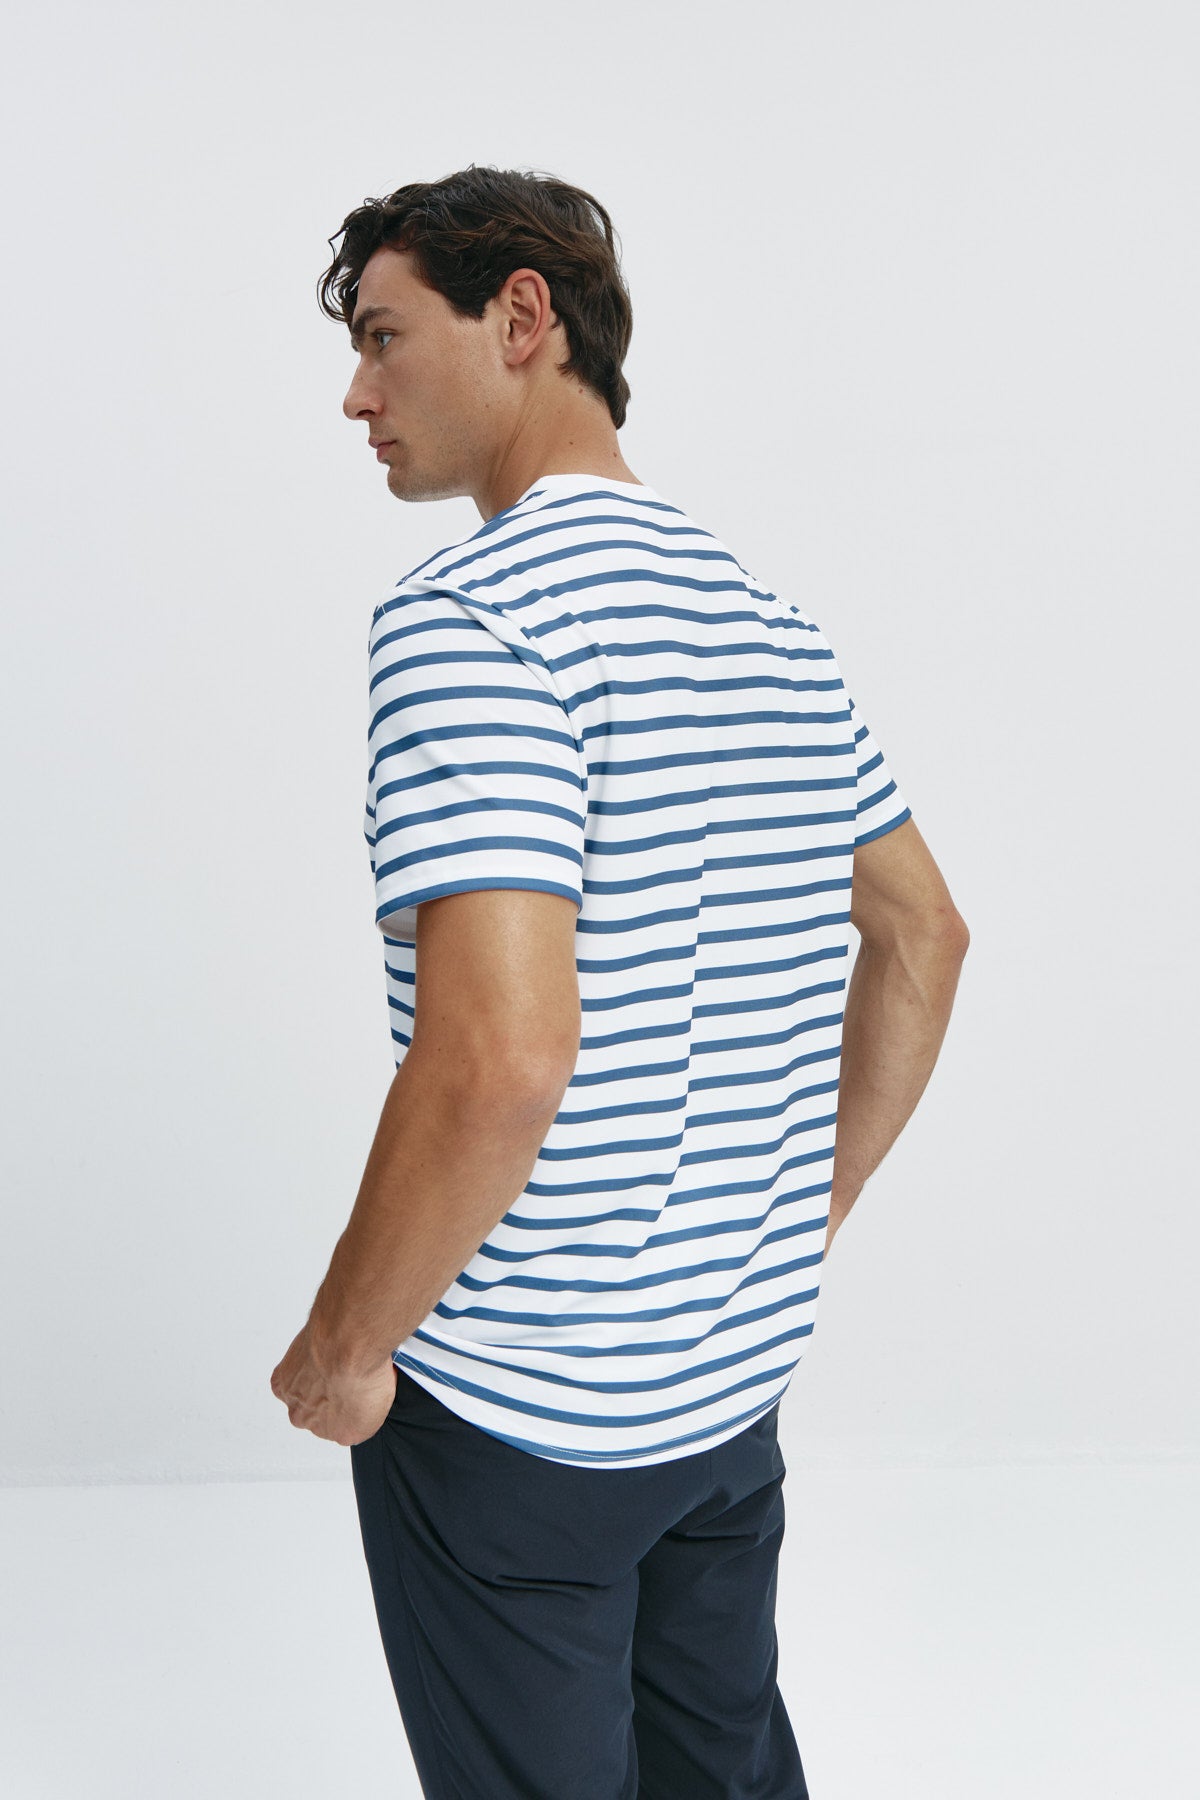 Camiseta de hombre con rayas marino de Sepiia, estilo y versatilidad en una prenda resistente. Foto espalda